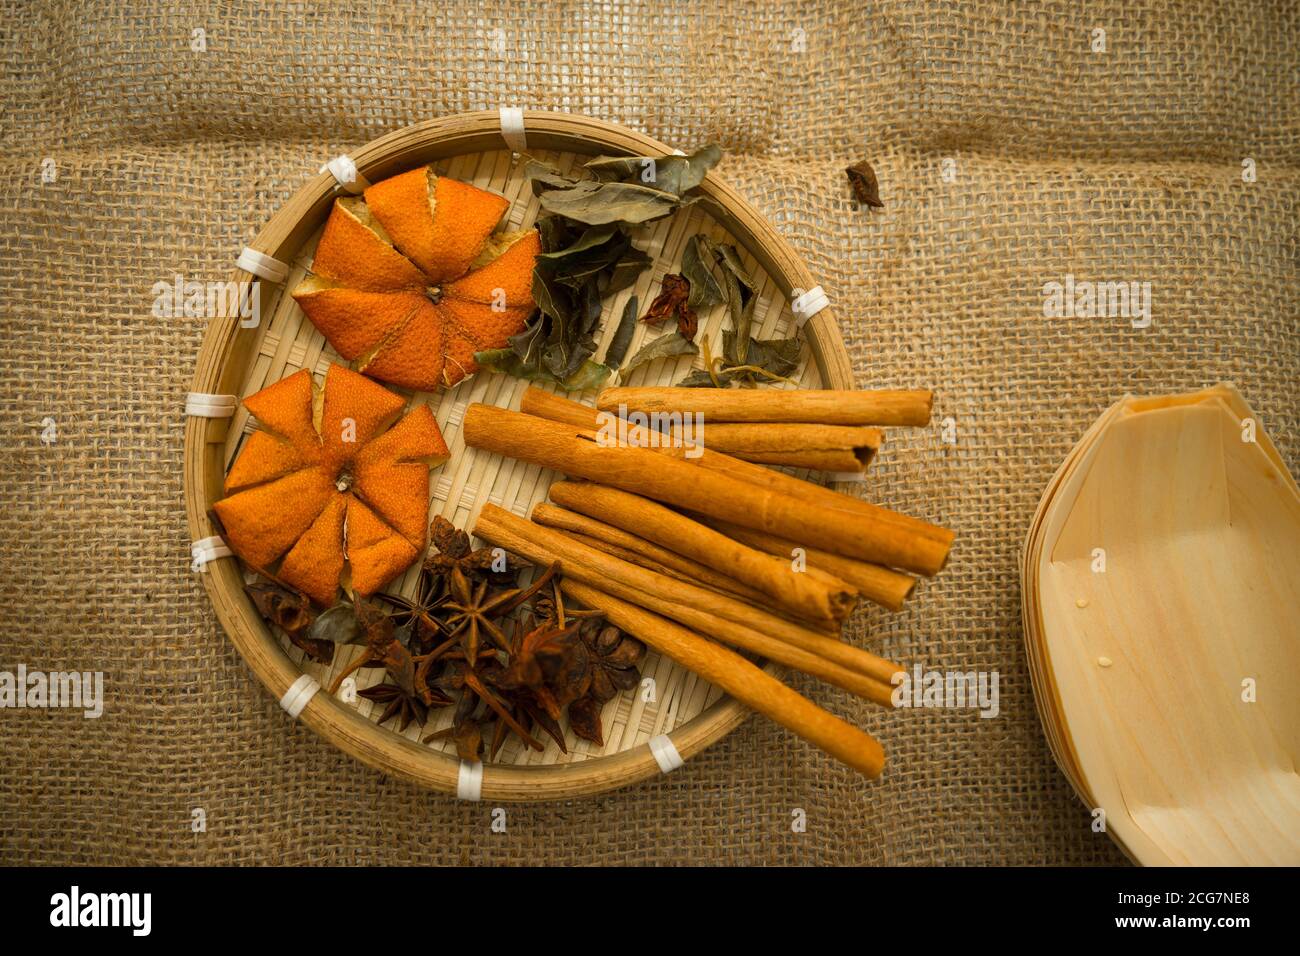 Vista dall'alto della buccia di mandarino essiccata, dei bastoncini di  cannella e dell'anice stellato nel vassoio di legno di bambù in tessuto  sullo sfondo del burlap - concetto di erbe e spezie